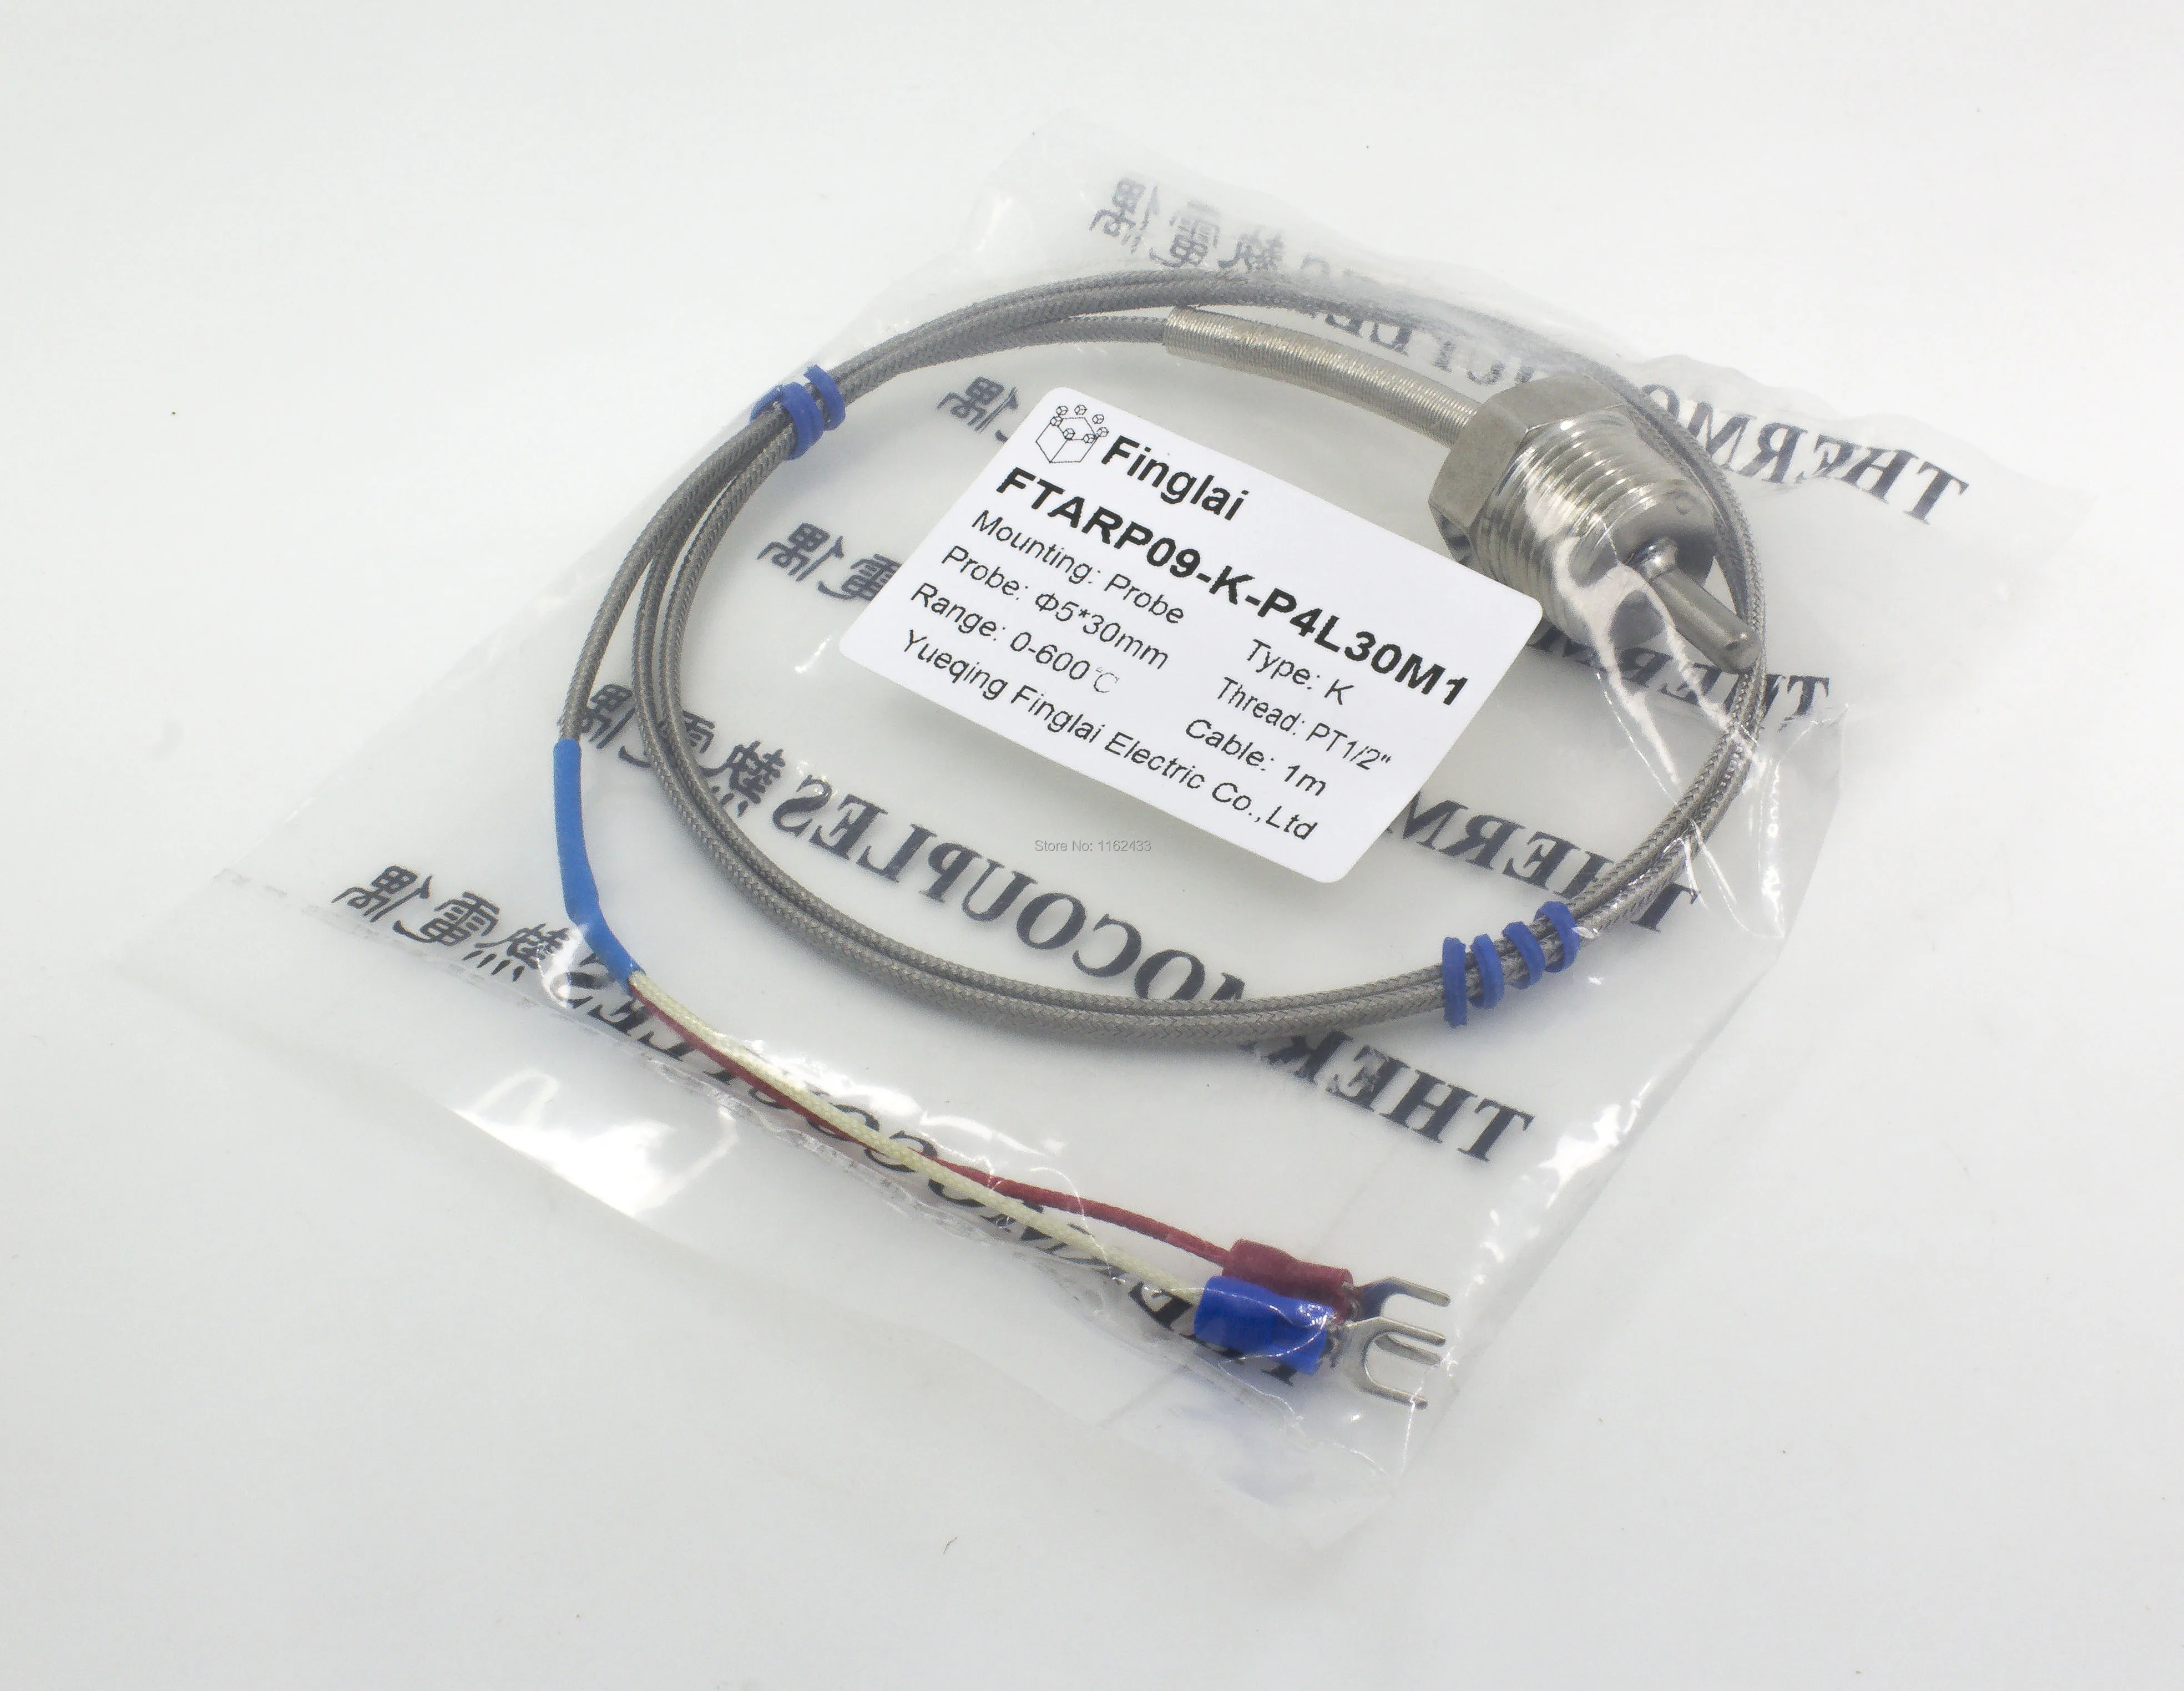 FTARP09 K tipa 30 mm zondes garums 1m kabeļa termopāris temperatūras sensors